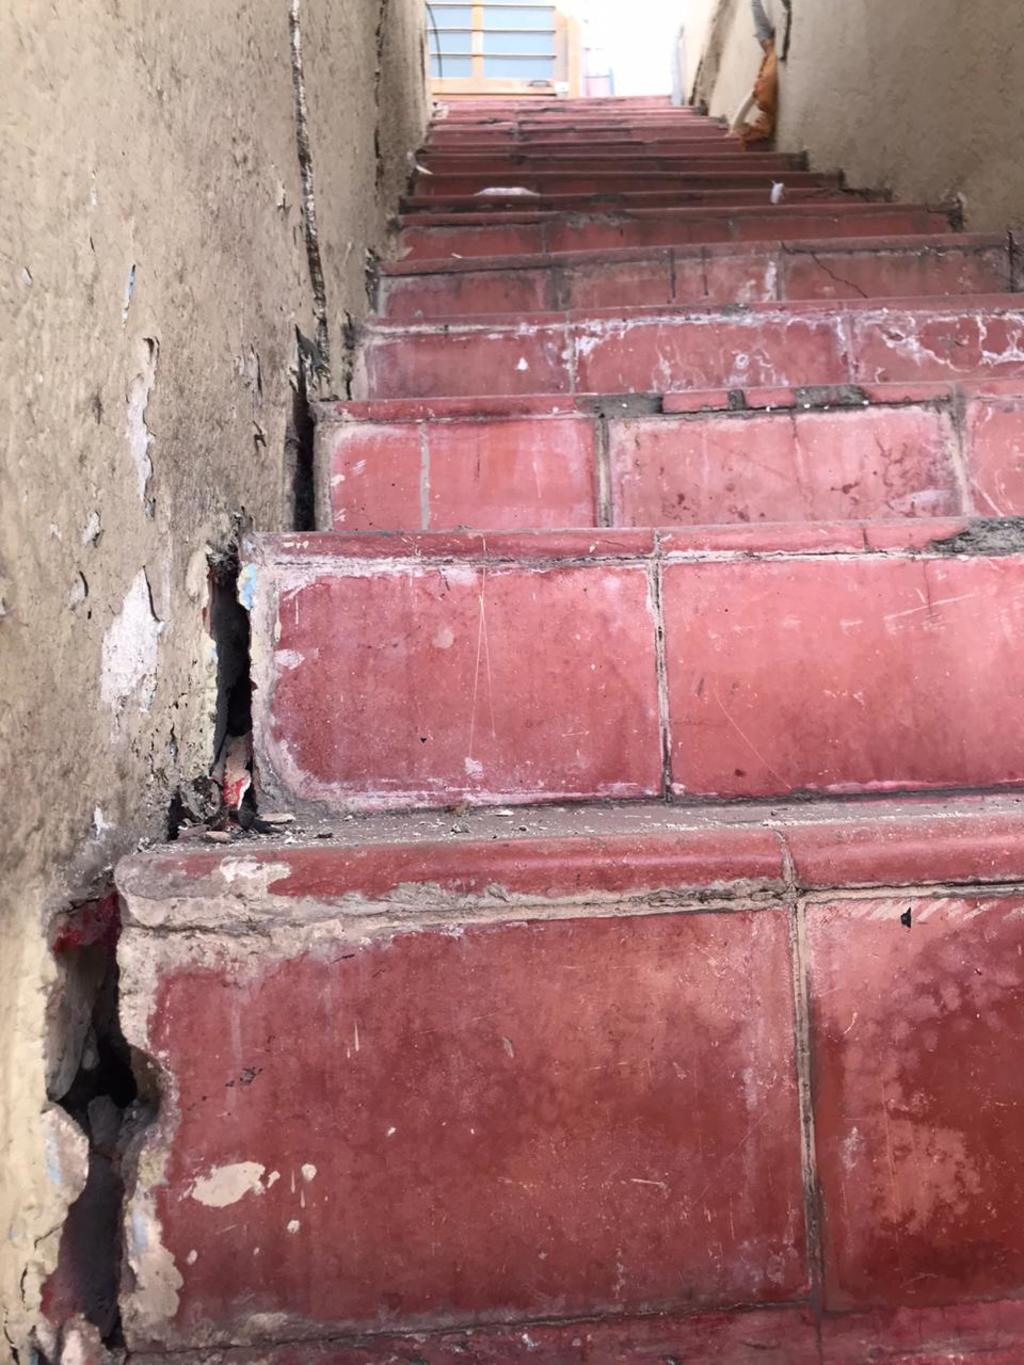 En los últimos cinco días muros, escaleras y pisos del inmueble se han agrietado y algunas partes del suelo presentan declives notorios. 
(EL SIGLO COAHUILA)